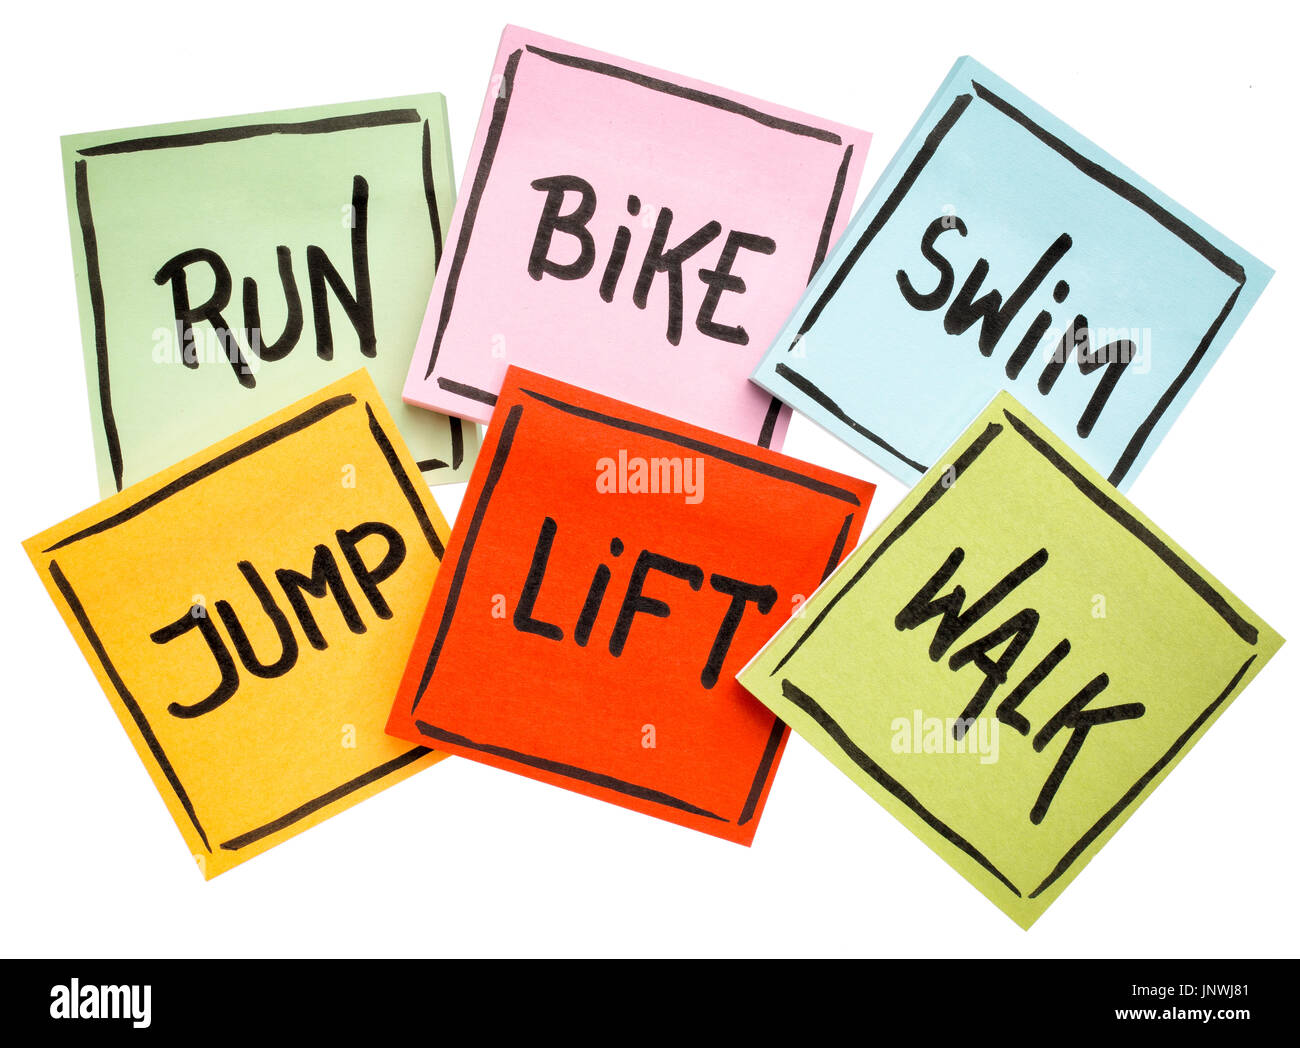 Eseguire, bike, nuotare, jump, ascensore, a piedi - fitness o croce il concetto di formazione - scrittura su foglietti adesivi isolato su bianco Foto Stock